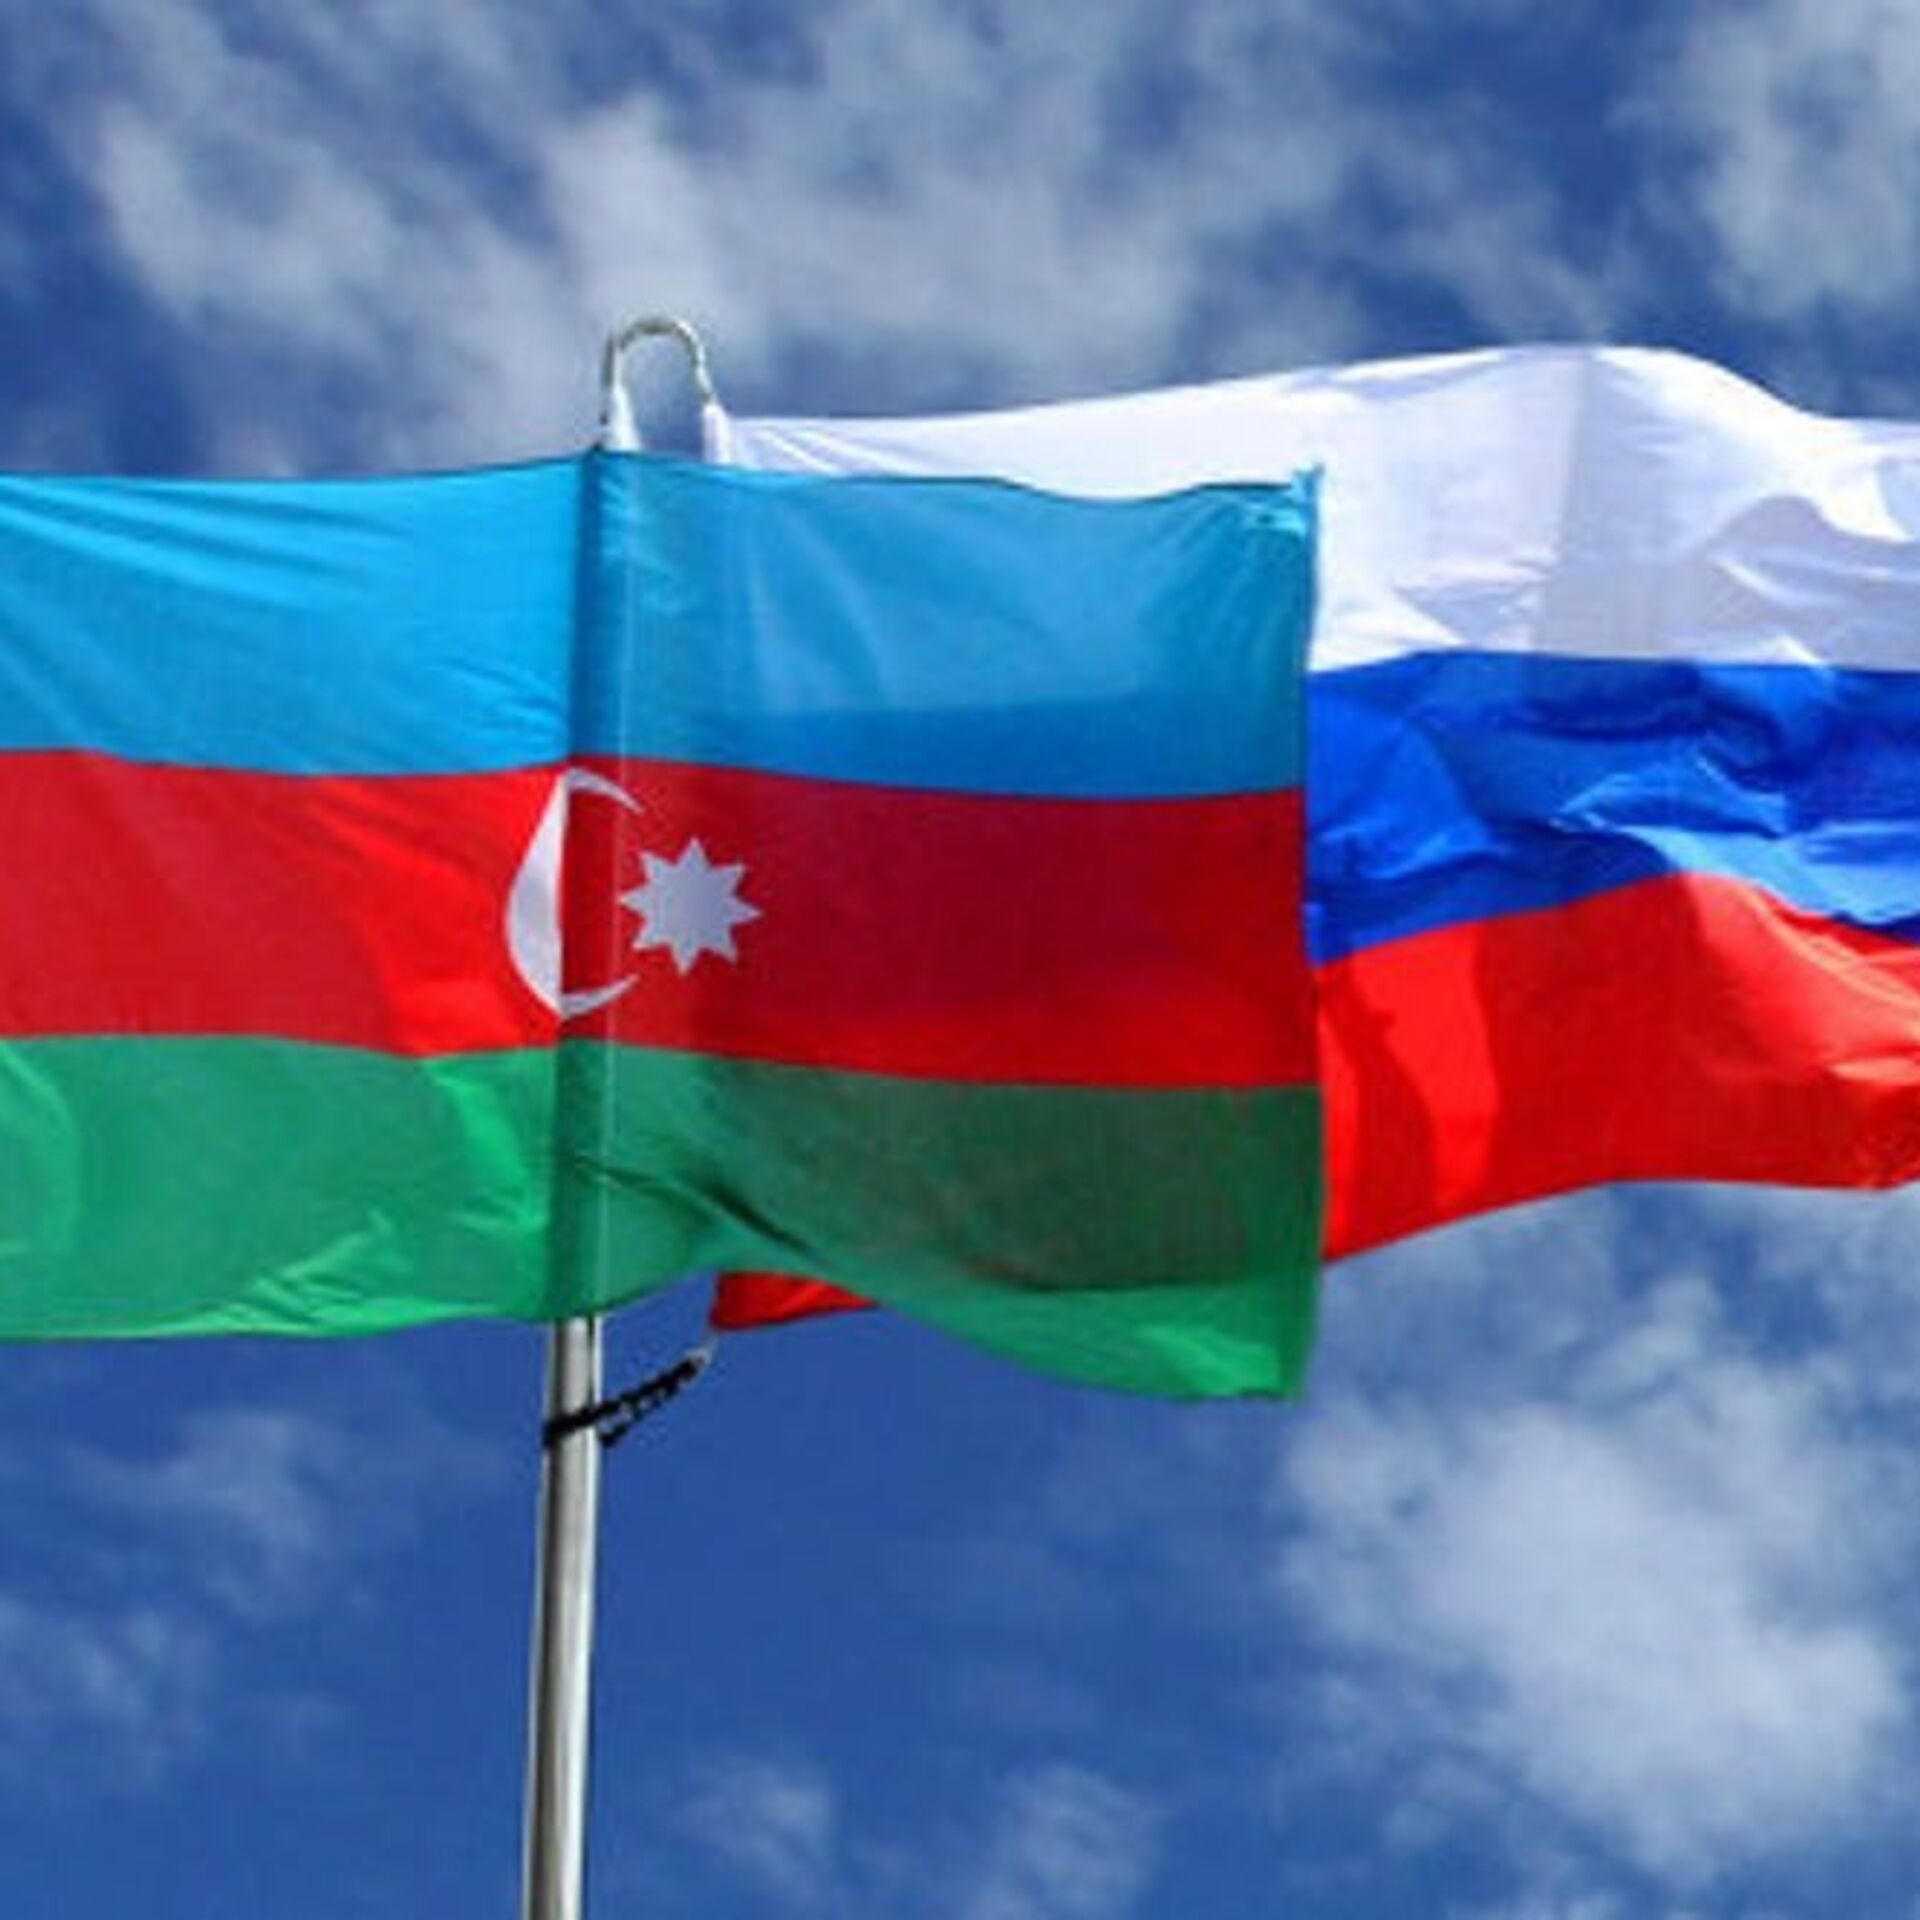 Москва и Баку подписали ряд документов на российско-азербайджанском форуме